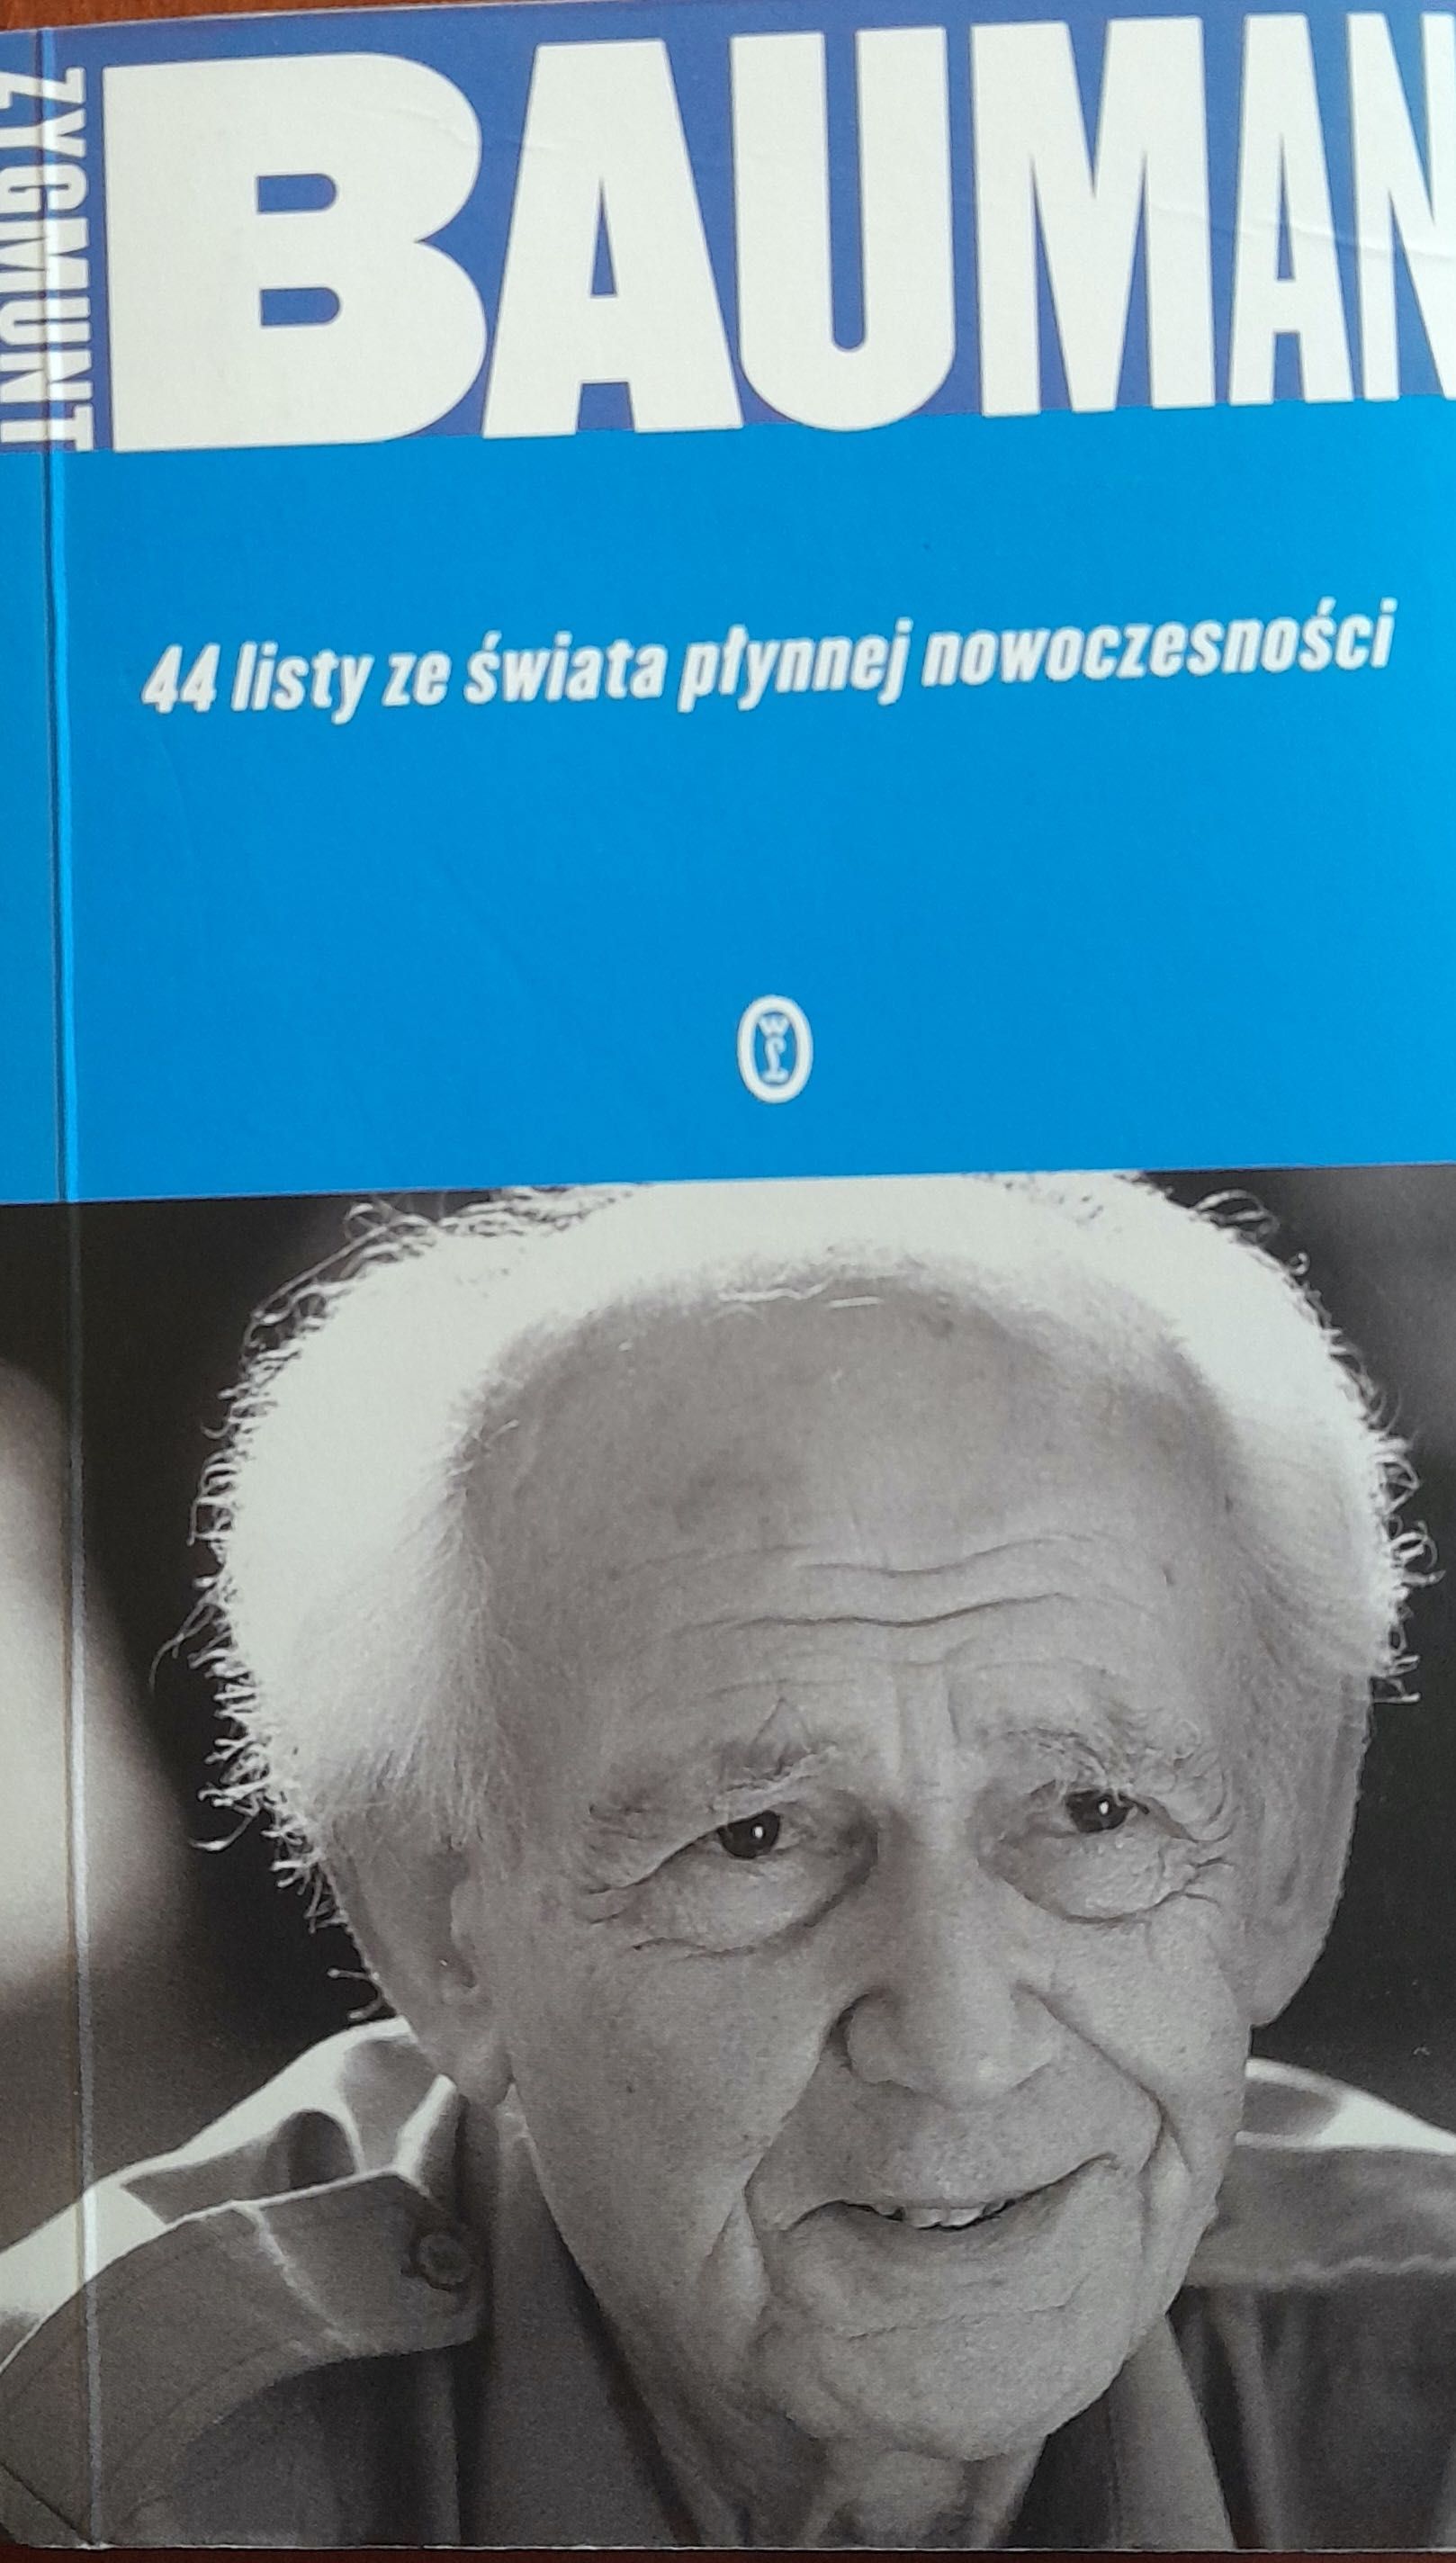 44 listy ze świata płynnej rzeczywistości, Zygmunt Bauman